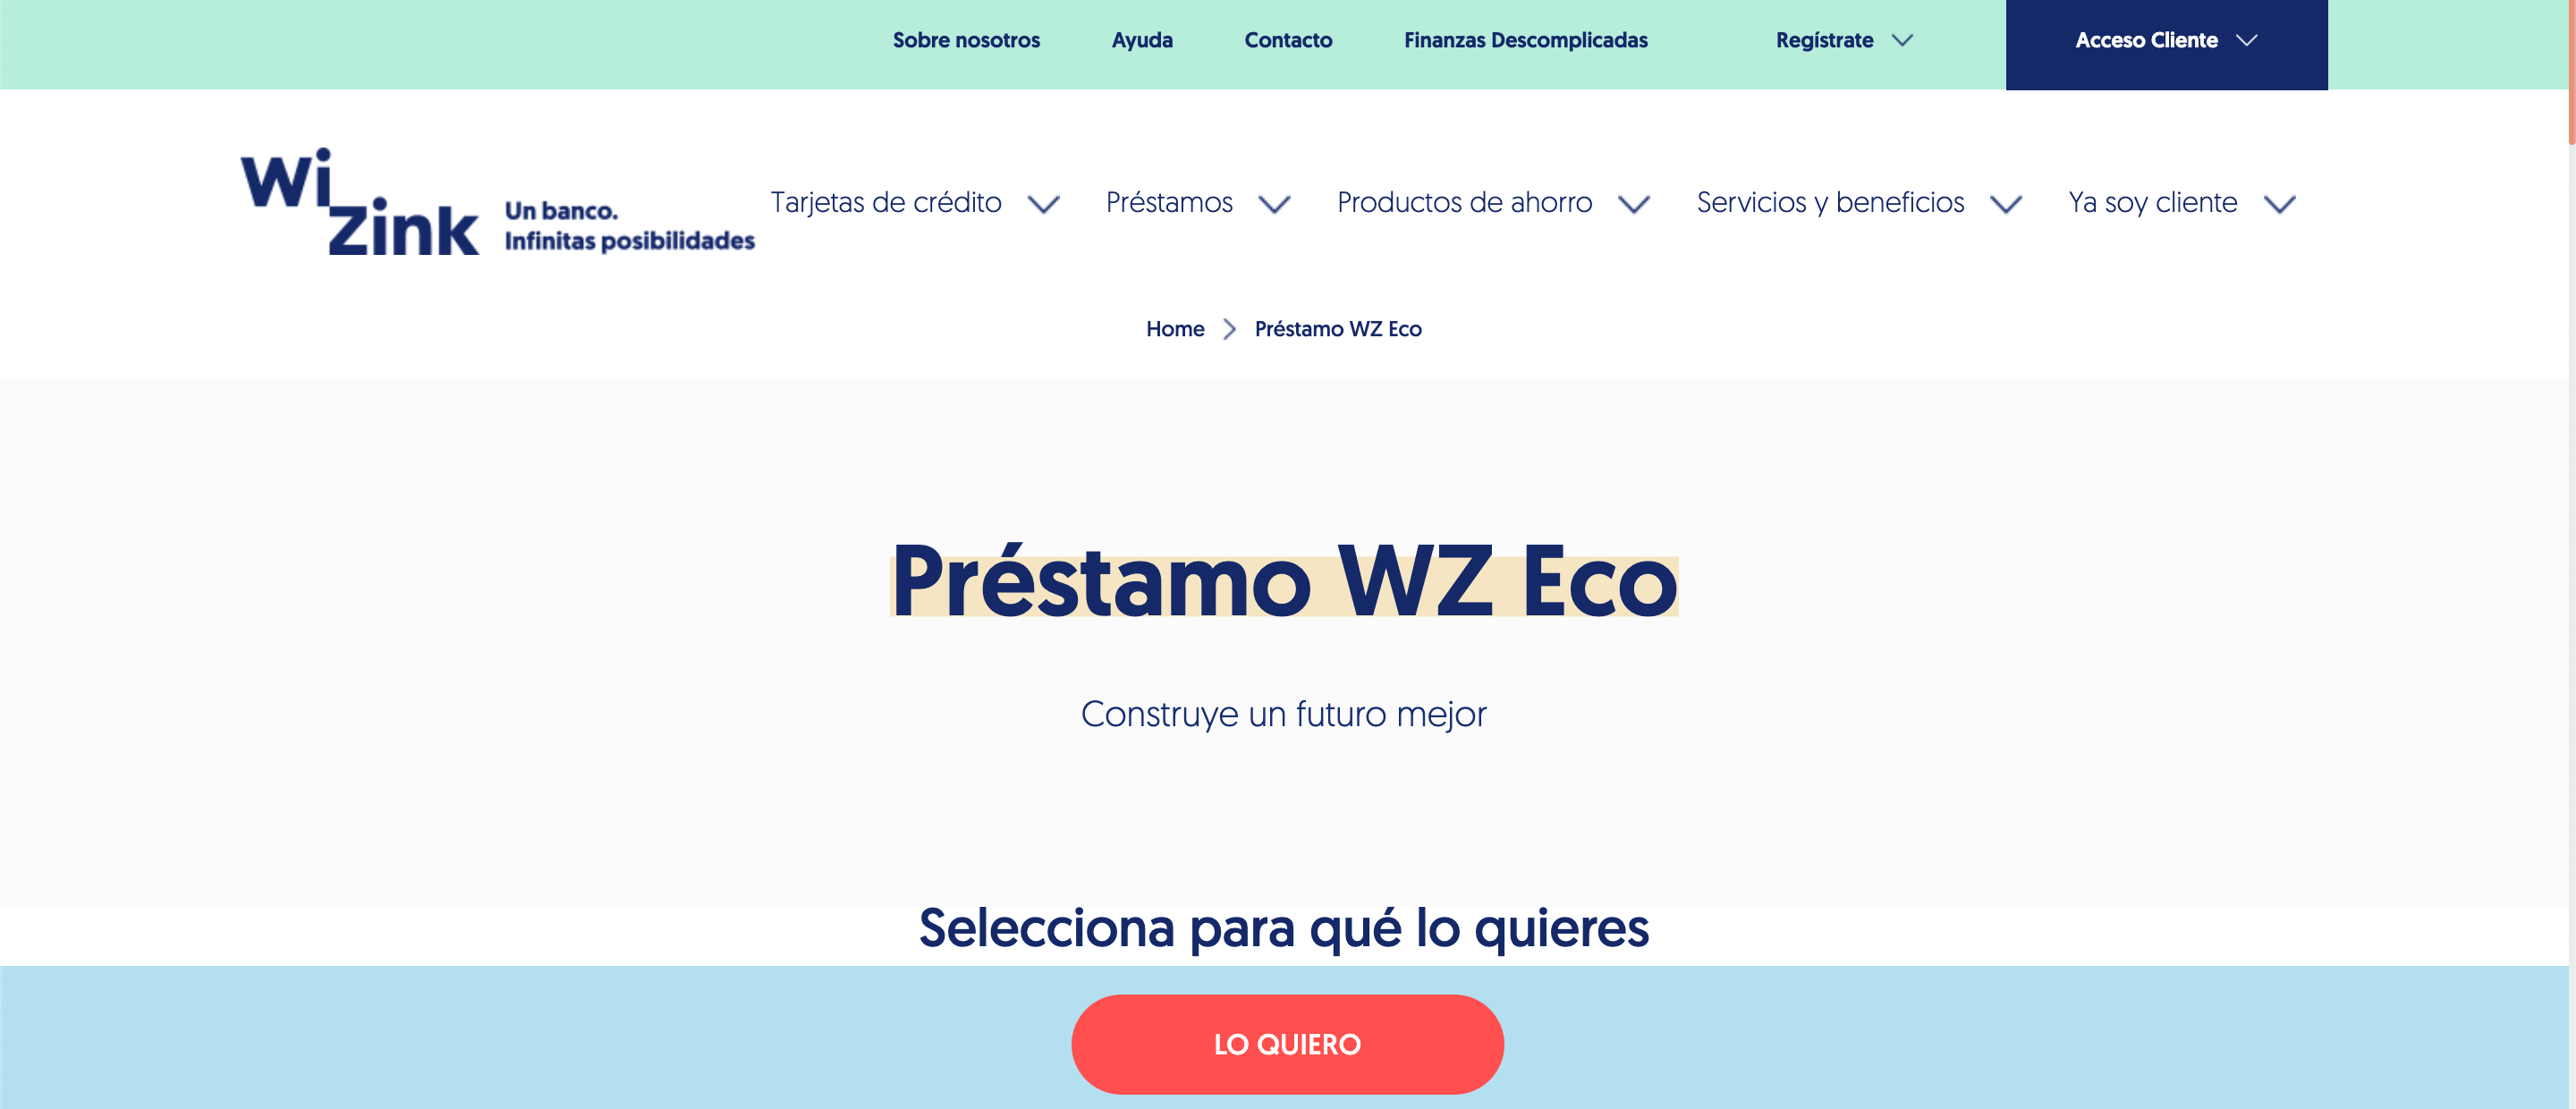 Wizink Préstamo WZ Eco hasta 30 000 €